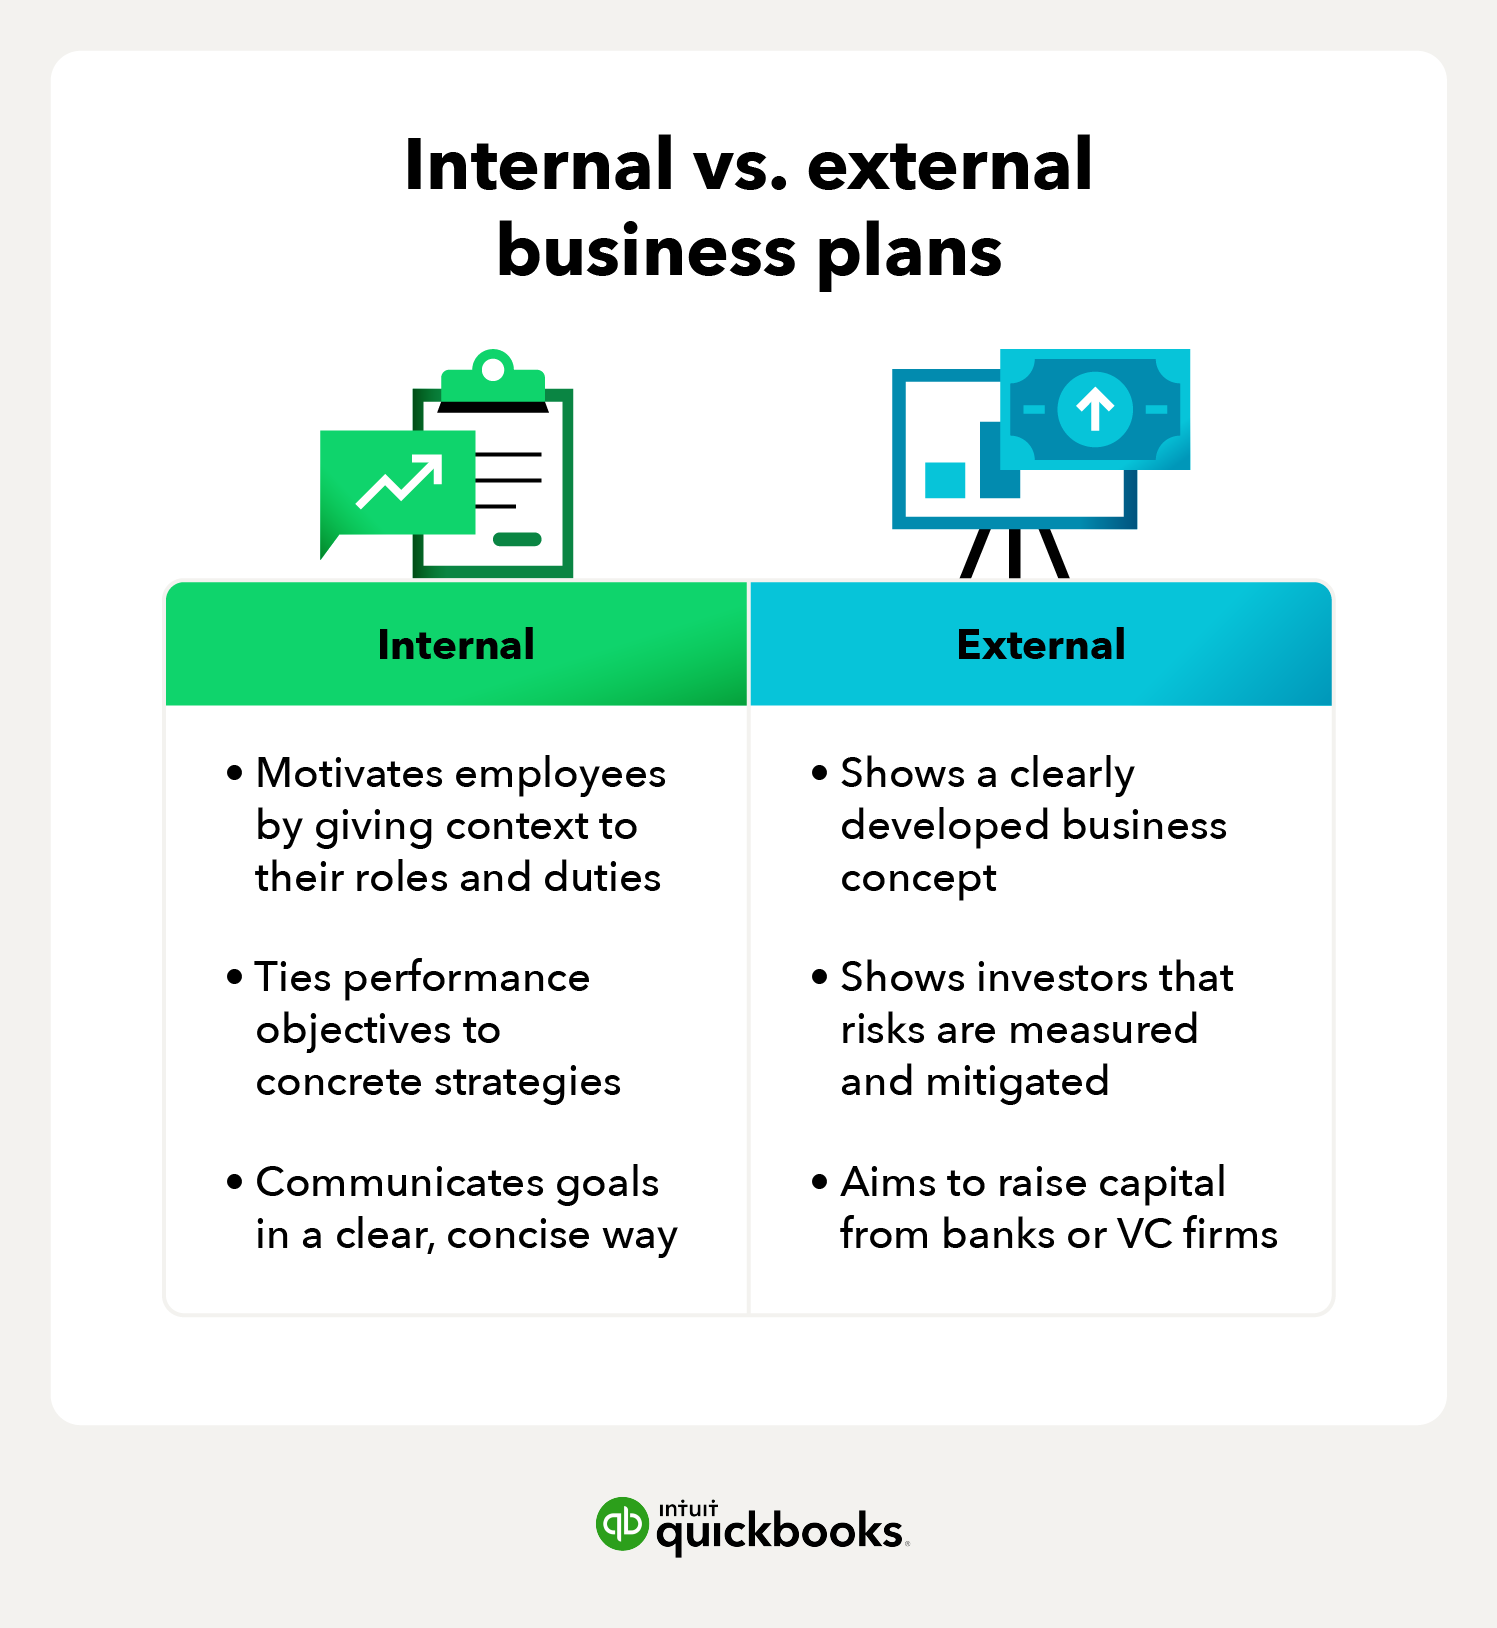 Internal business plan vs external business plan